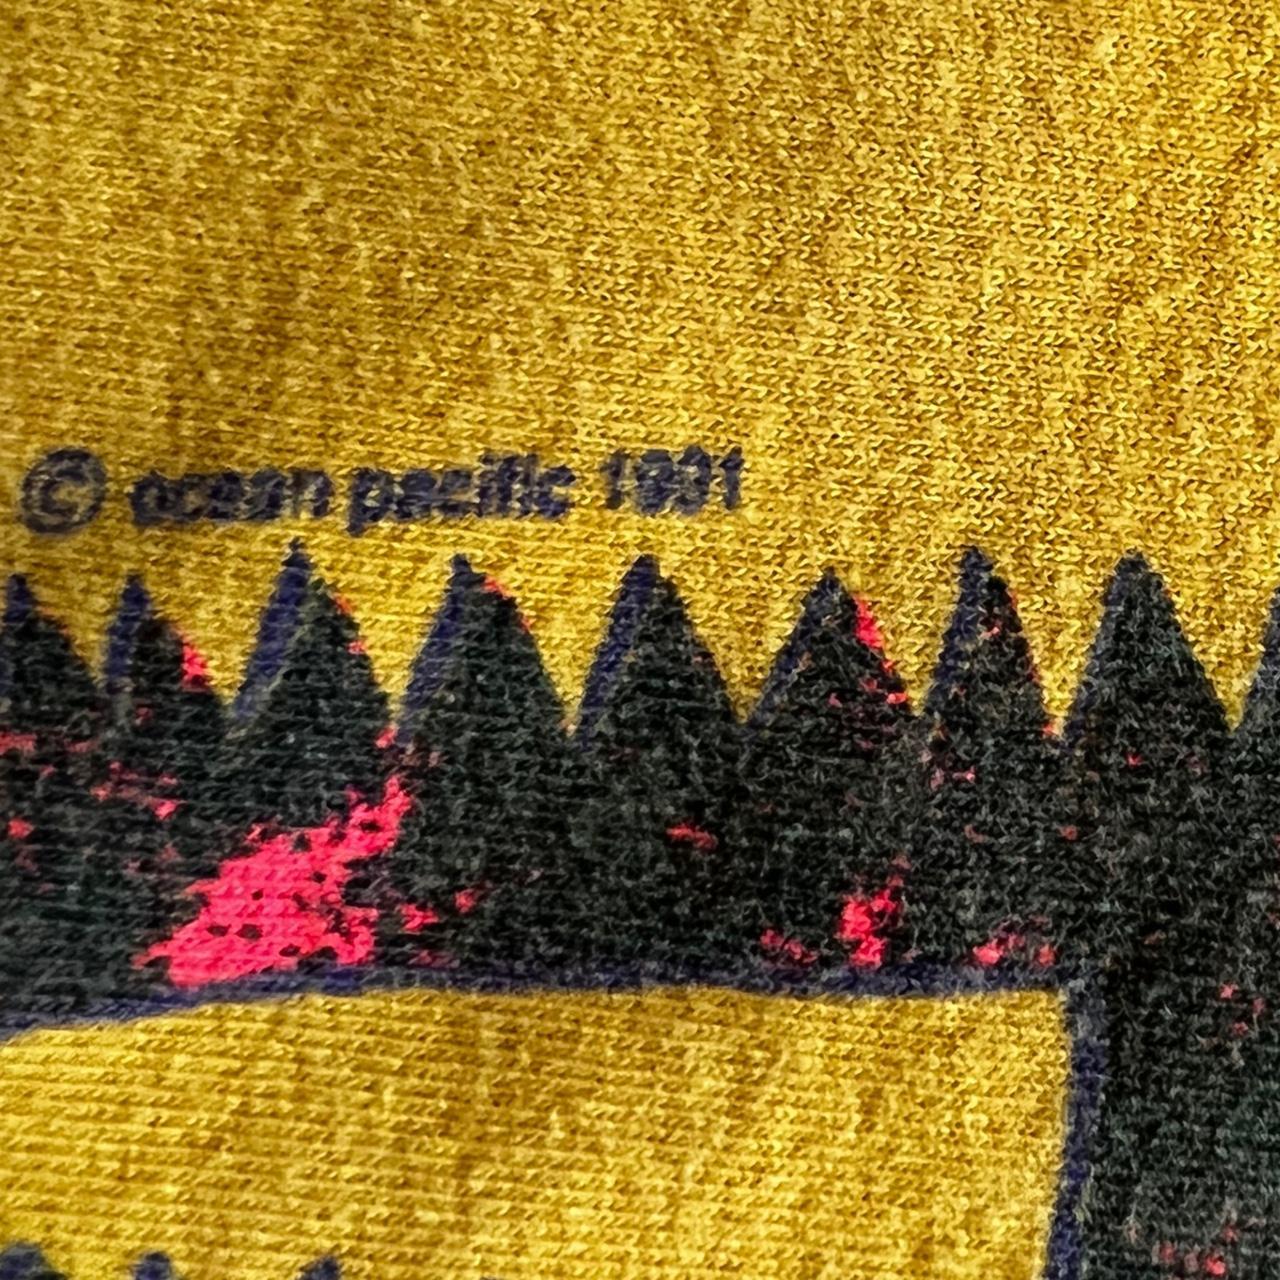 Ocean Pacific Men's Yellow T-shirt (3)